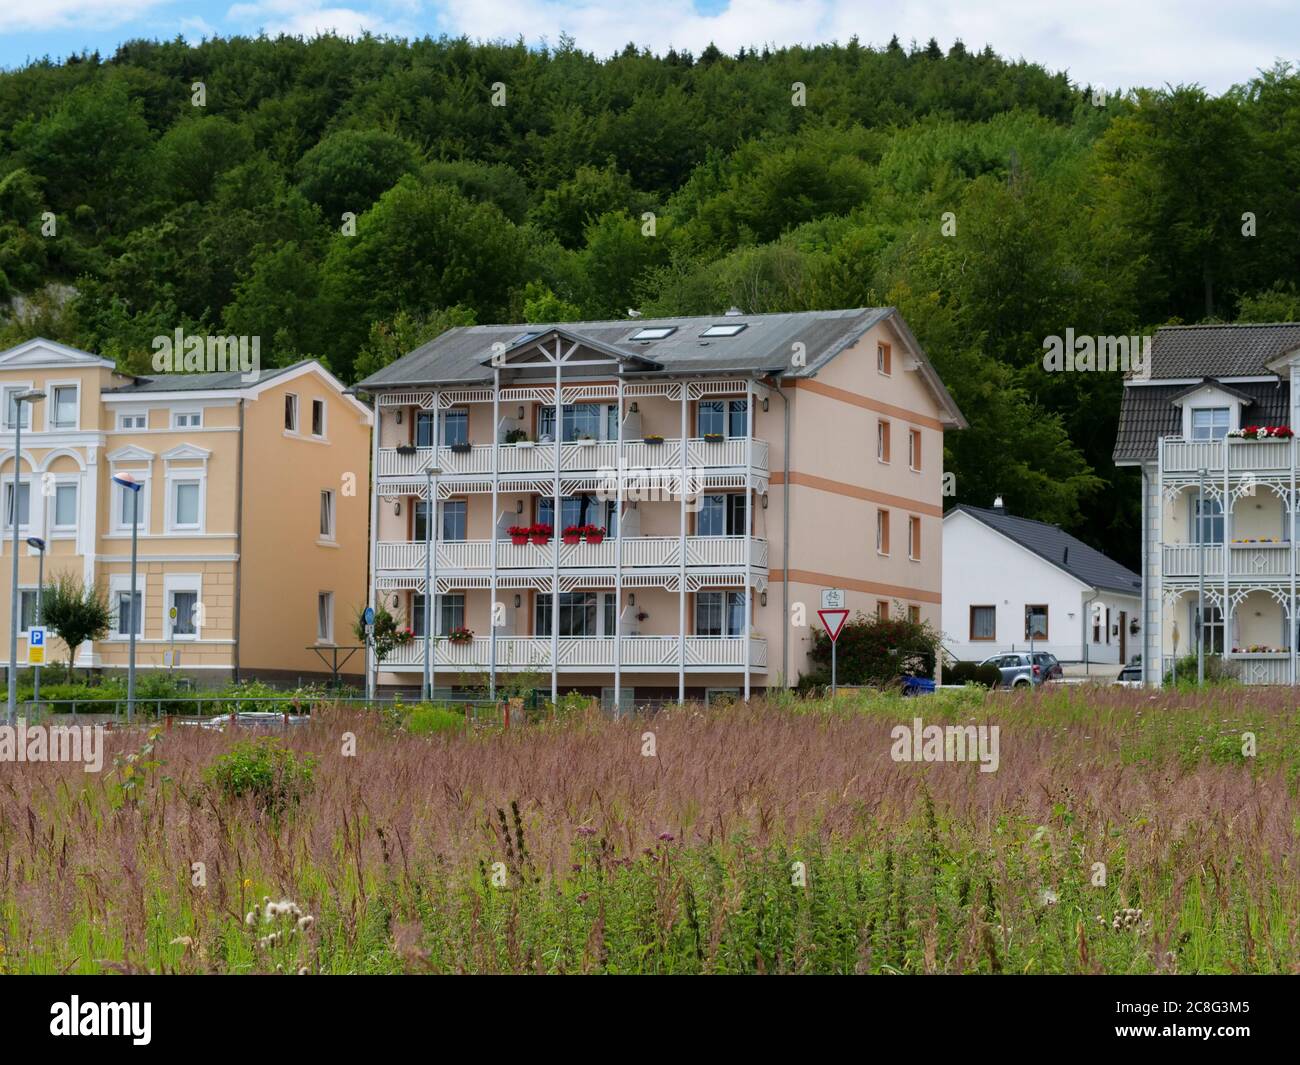 Villen in Sassnitz auf Rügen Hausfassaden mit Balkonen Holzfassaden Häuser Immobilien Ostsee Ferienwohnung Architektur Wohnung Stock Photo